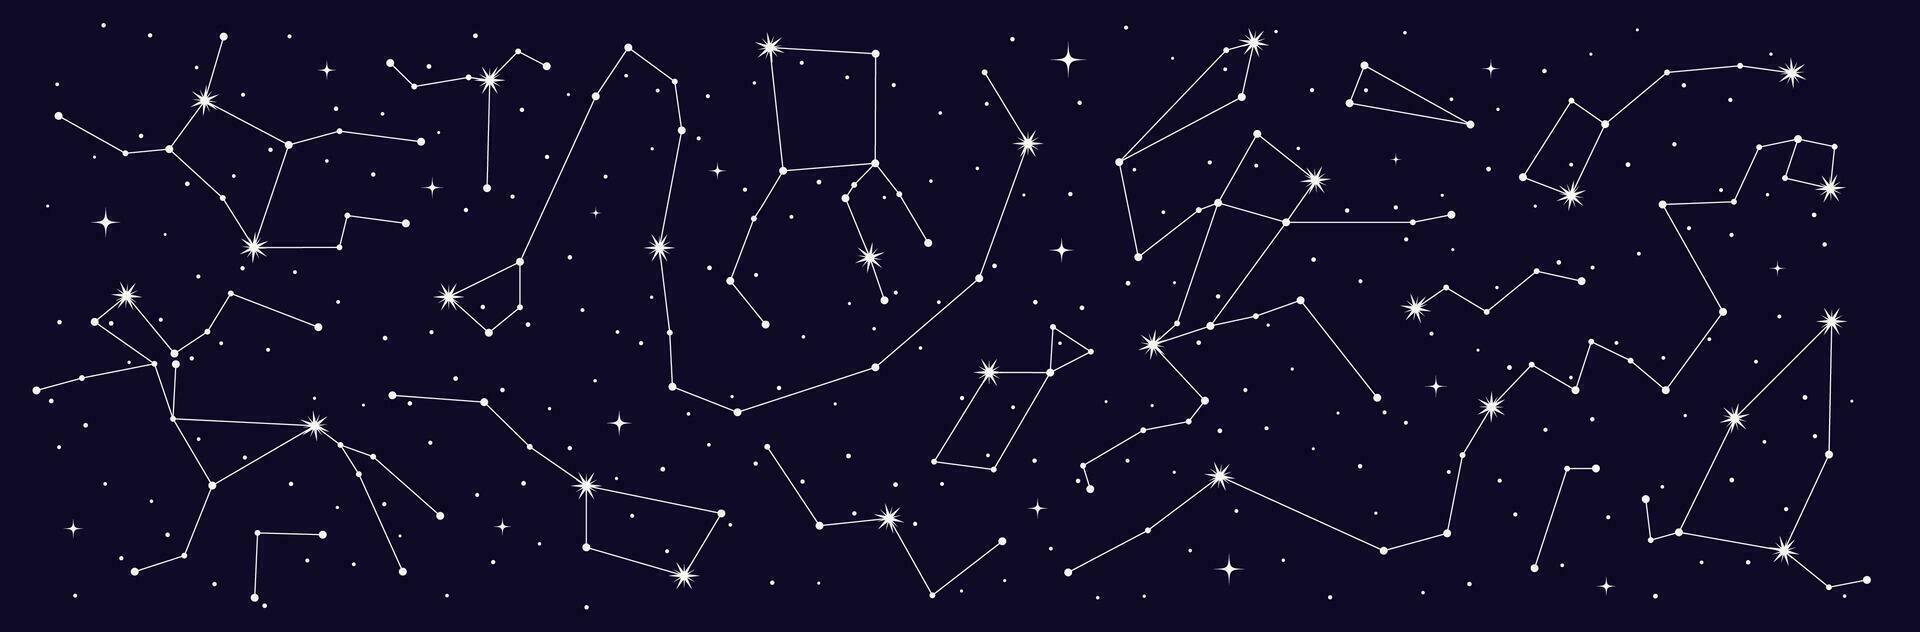 mistico astrologia, stella costellazione notte cielo carta geografica vettore